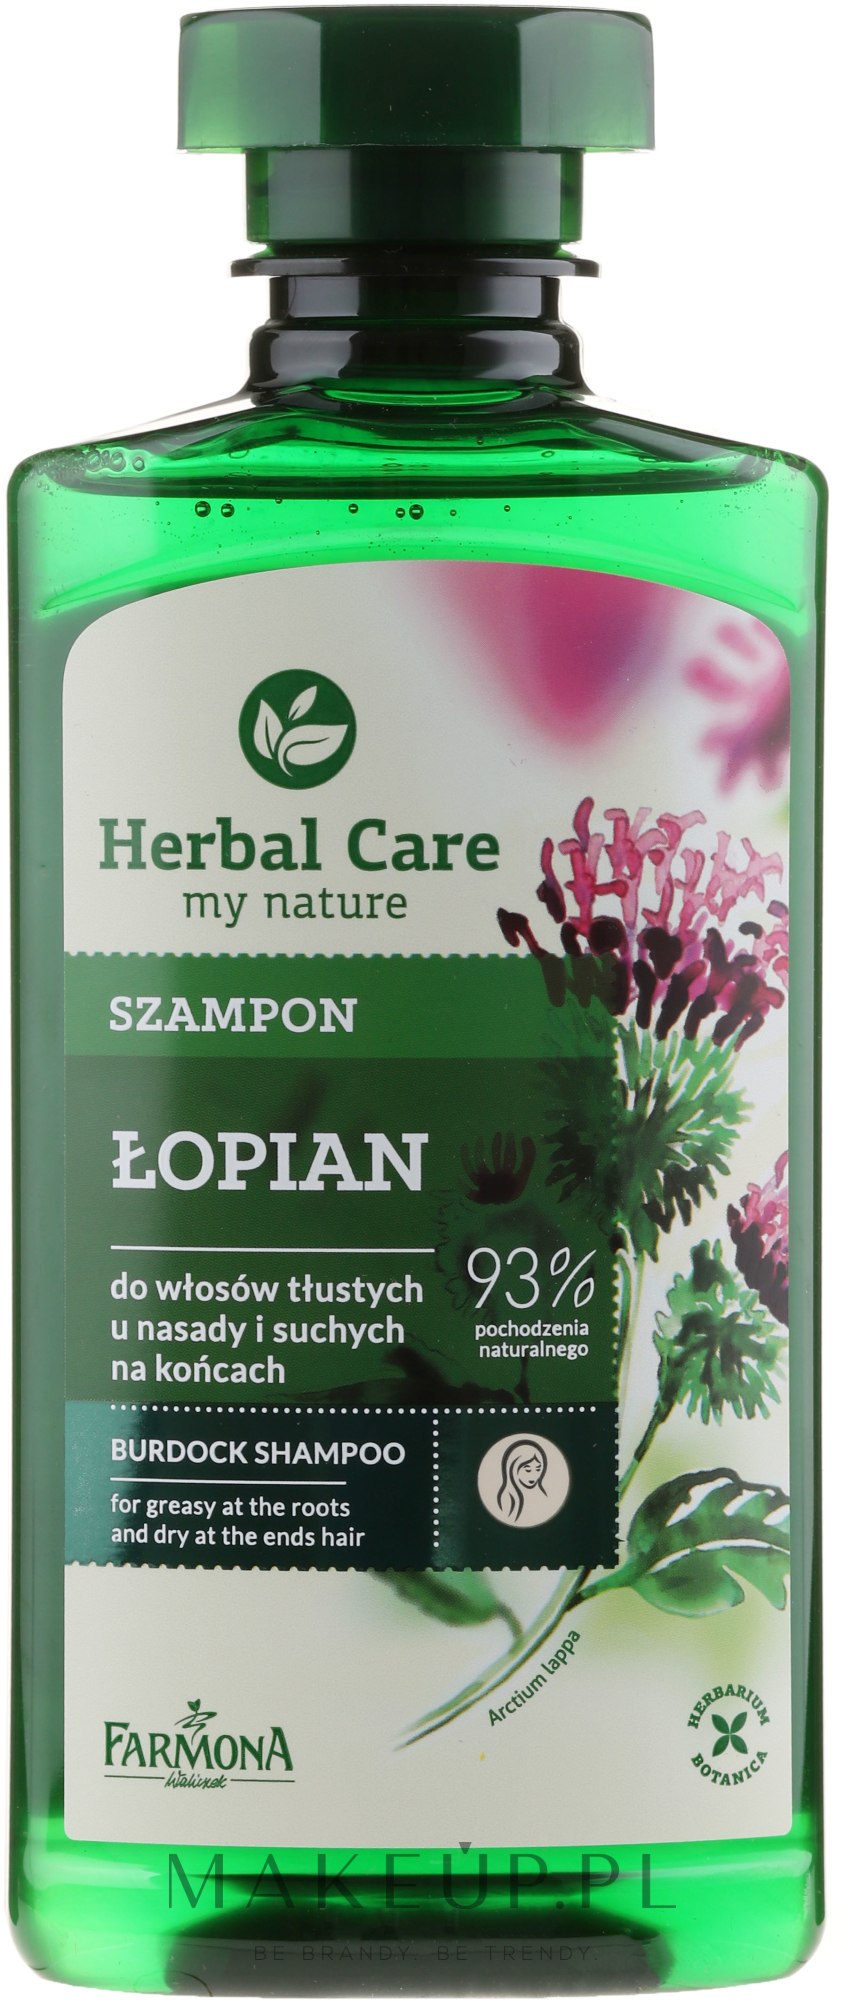 herbal care łopian szampon skład